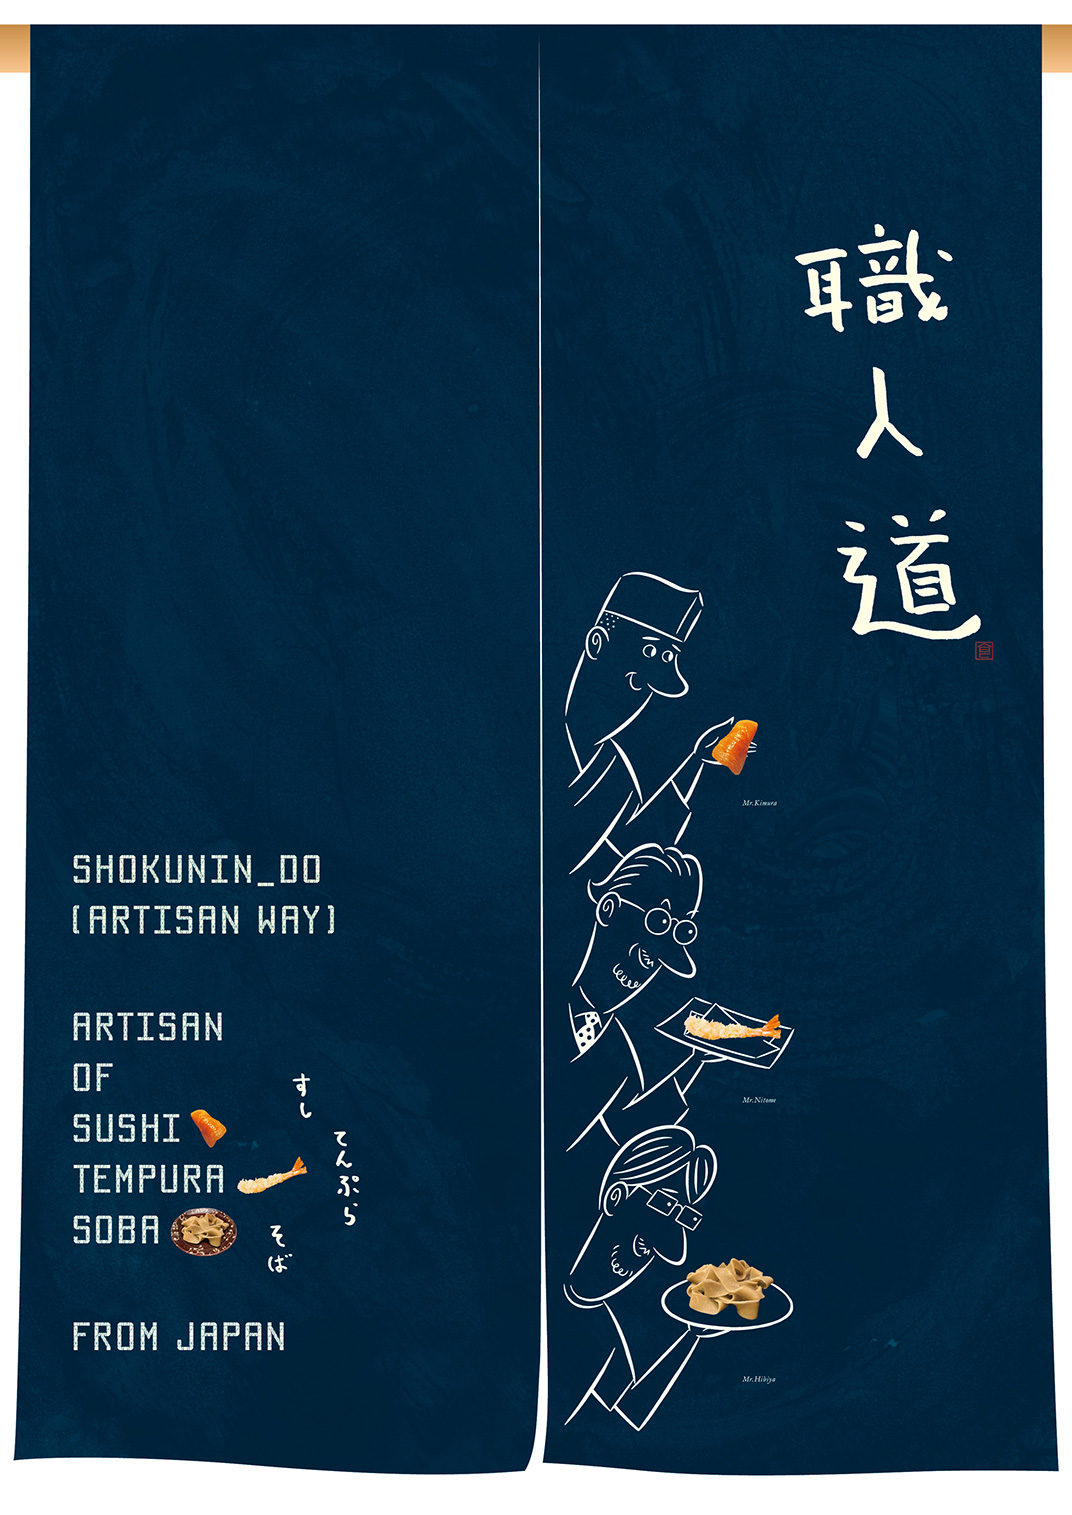 寿司插画设计 mr-design 餐厅LOGO VI空间设计 全球餐饮研究所 视觉餐饮 深圳 武汉 杭州 上海 广州 北京